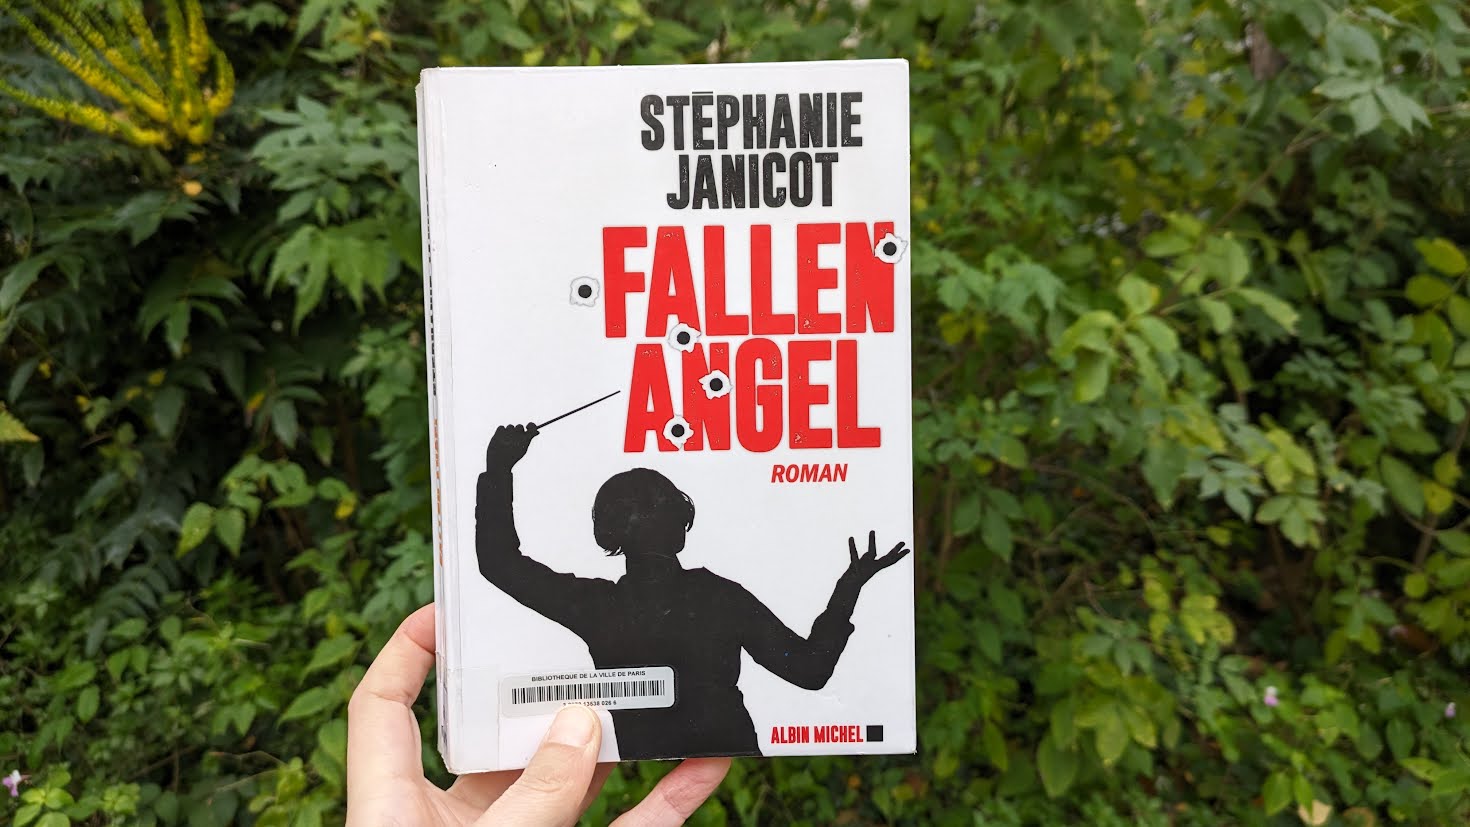 Fallen Angel – Stéphanie Janicot